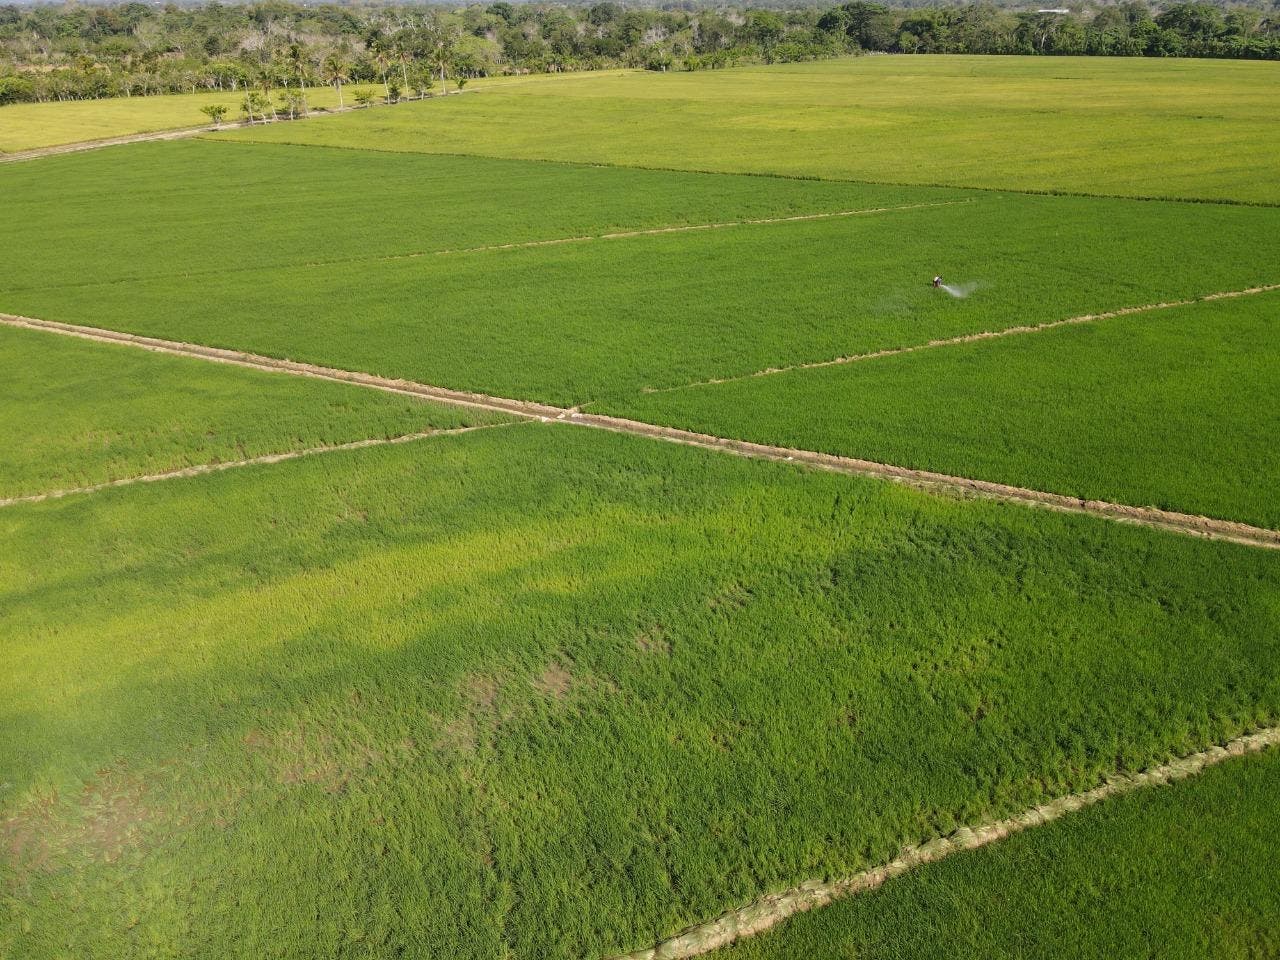 IAD destaca siembra de arroz en asentamientos supera las 700 mil tareas